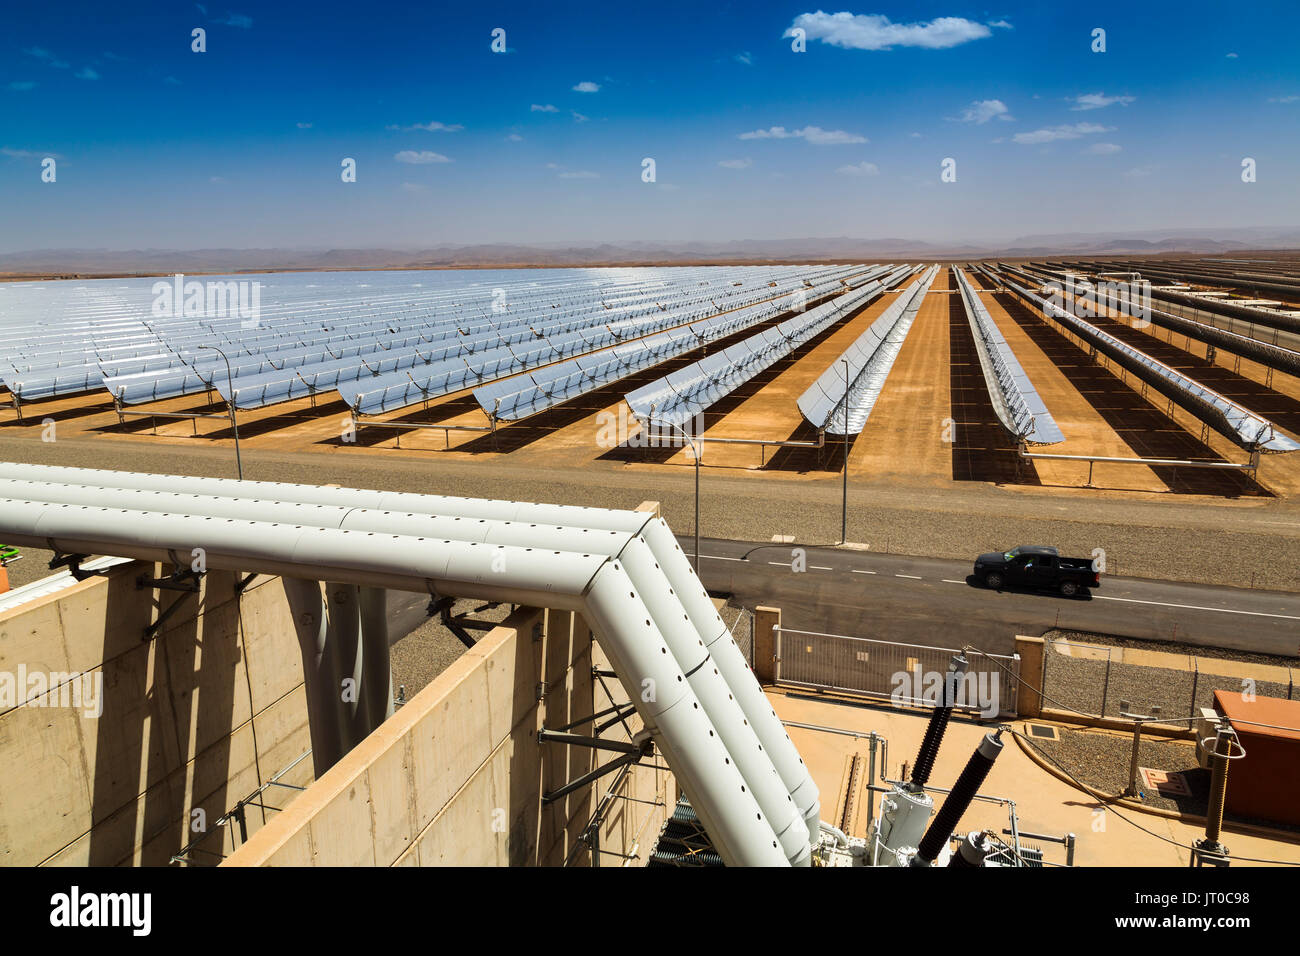 Energía solar térmica La energía sostenible, Noor Ouarzazate concentrado Solar Power Station complejo. Marruecos, Magreb, África del Norte Foto de stock